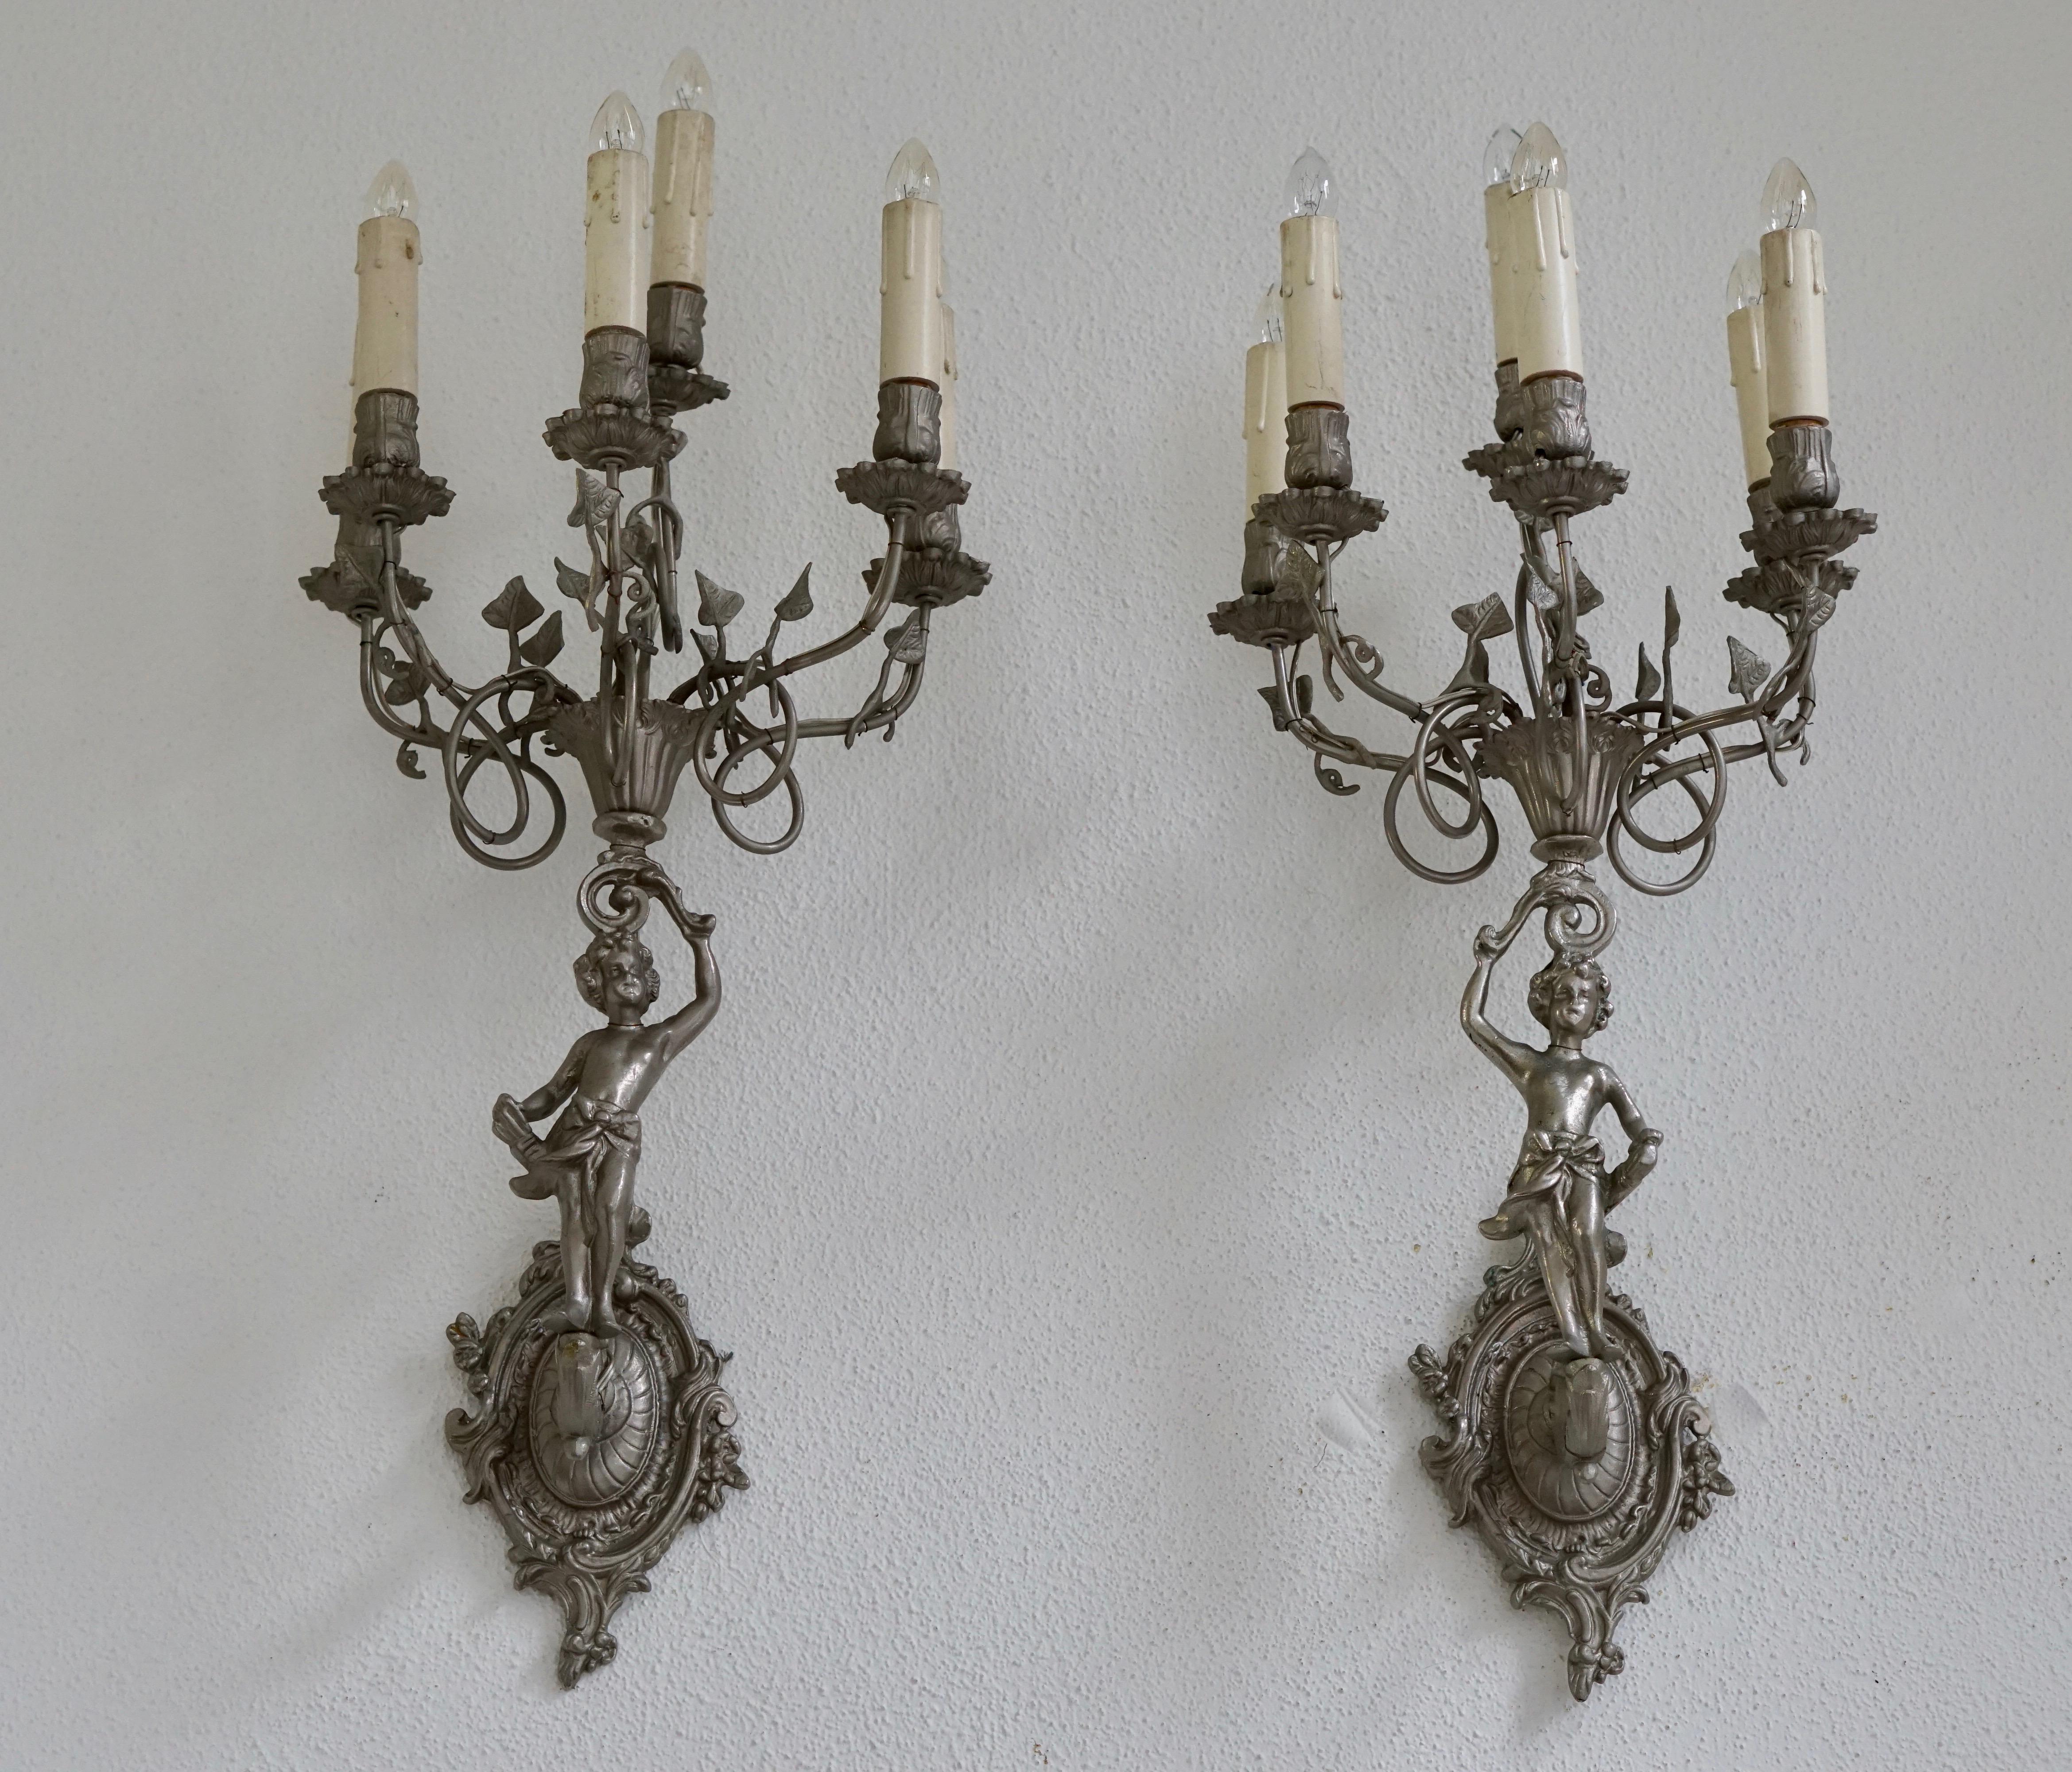 Art Nouveau Pair of Six-Light Wall Light Sconces